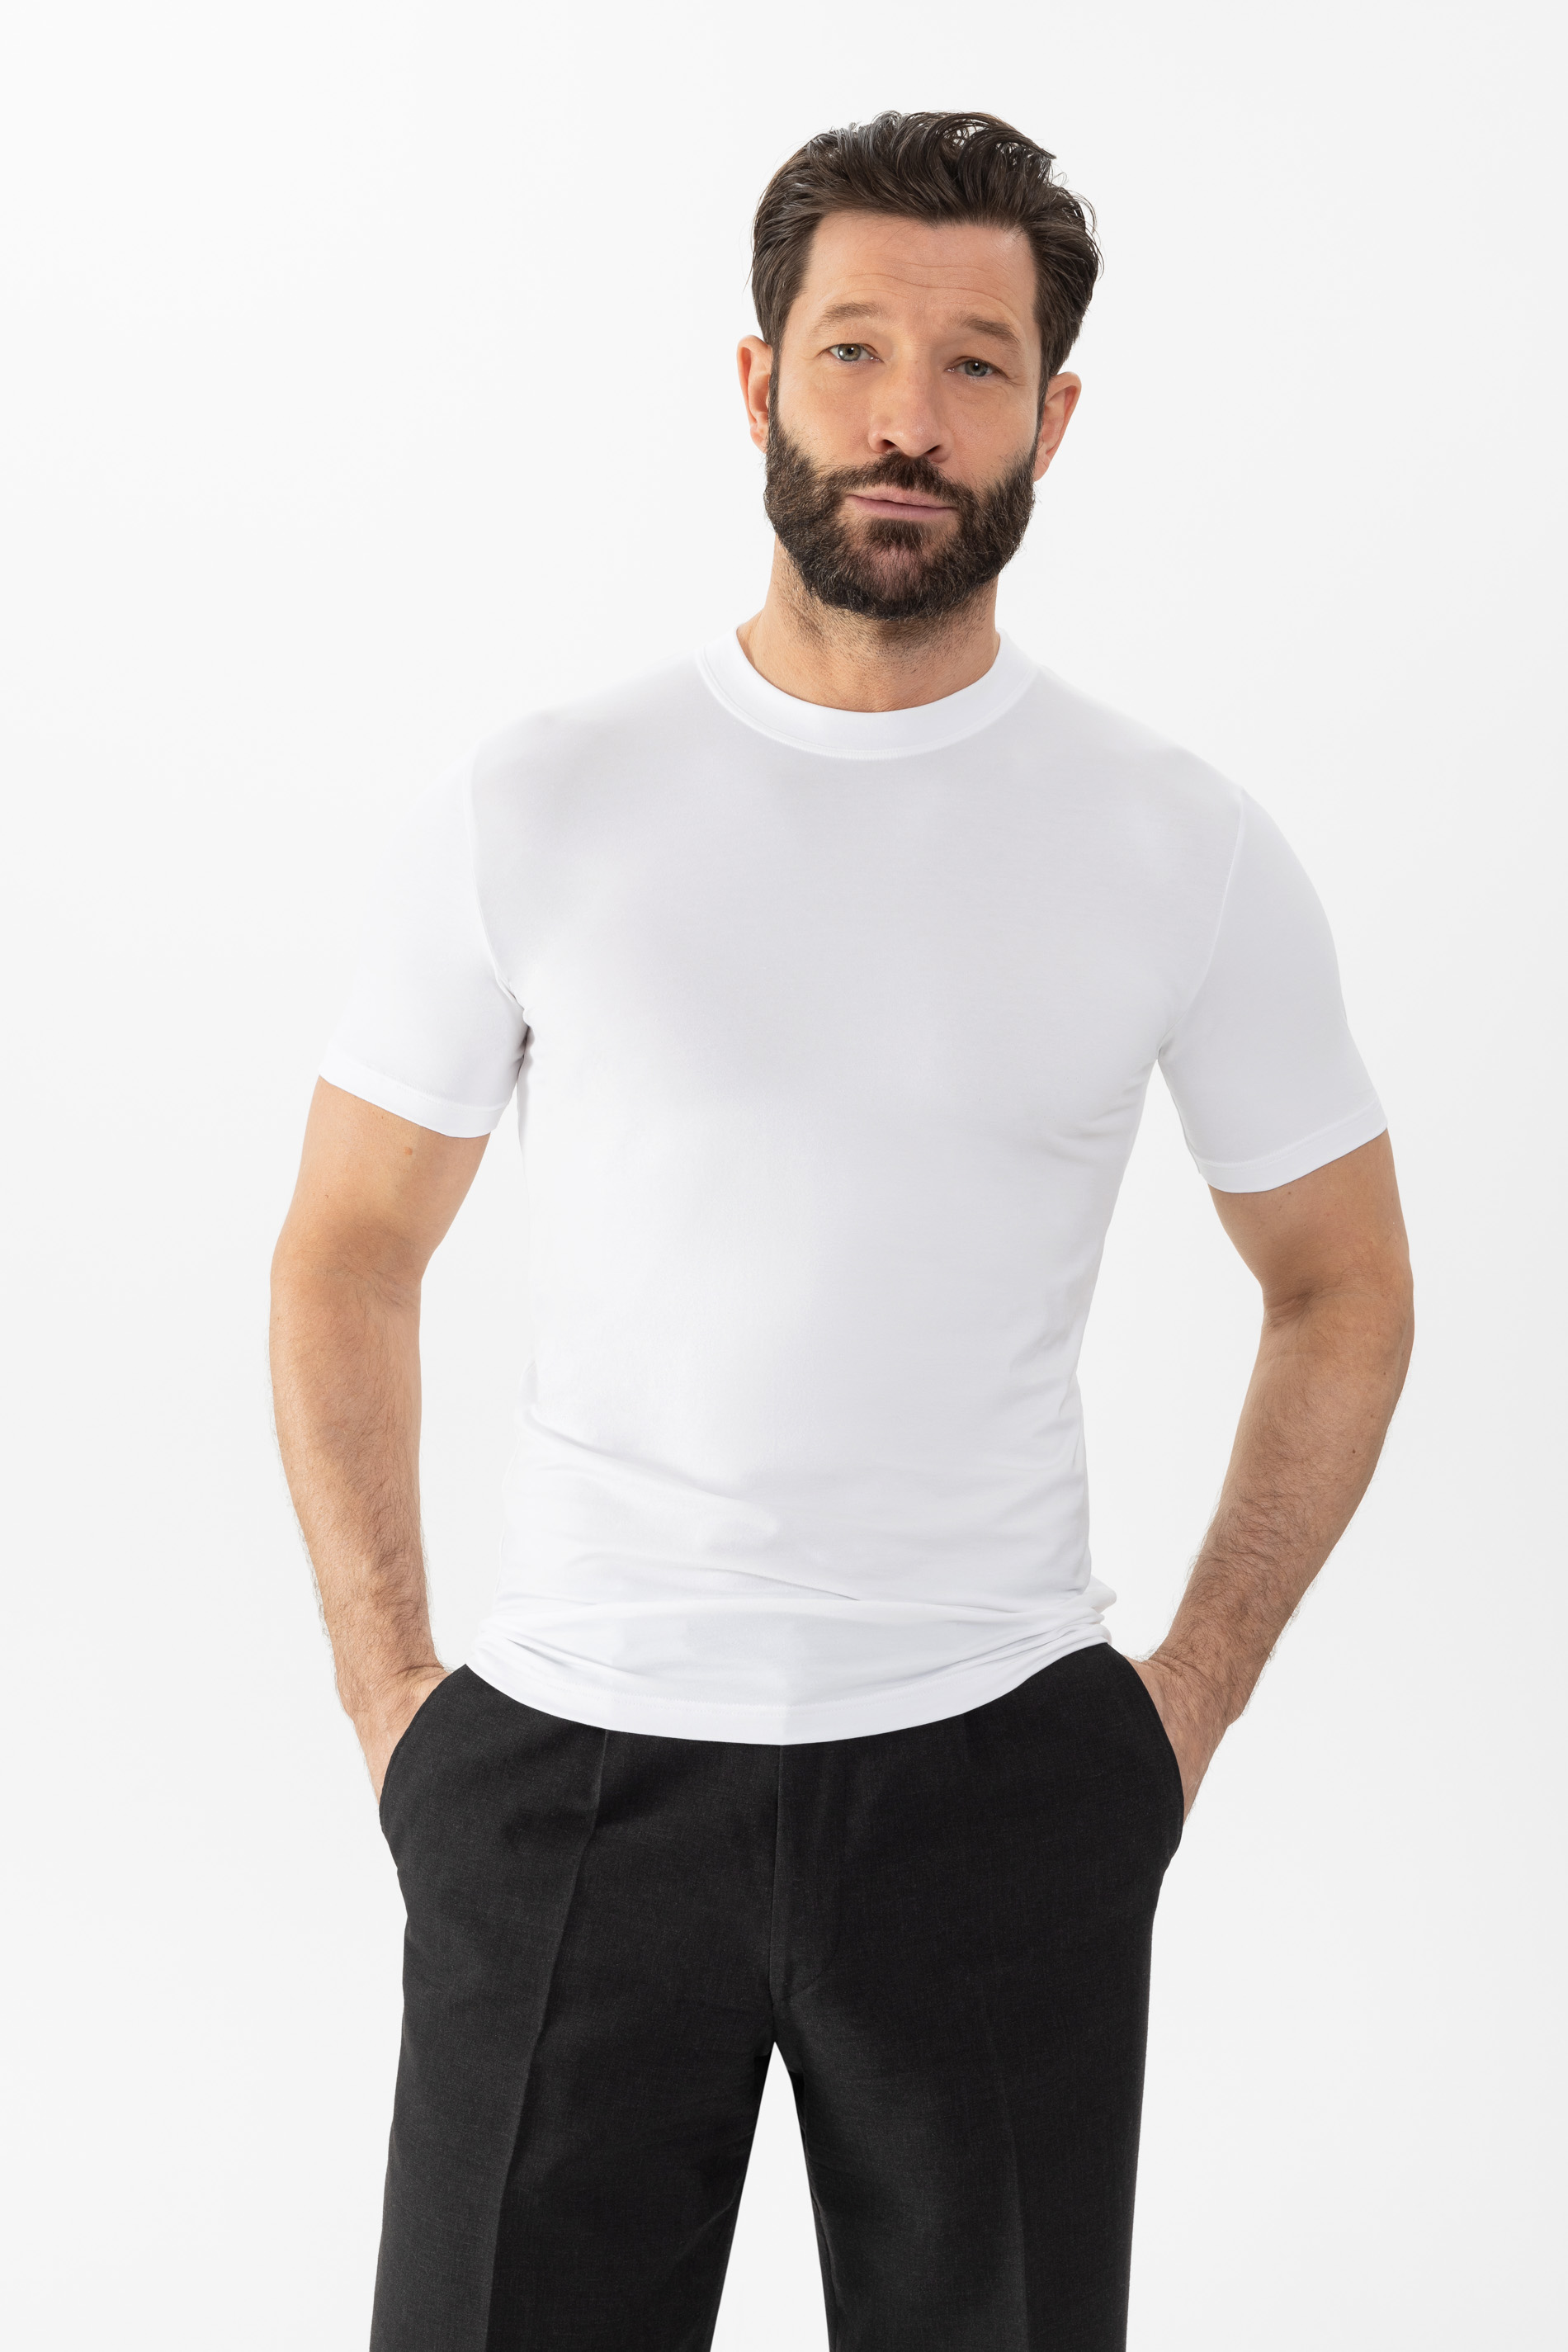 Shirt Weiss Serie Dry Cotton Festlegen | mey®